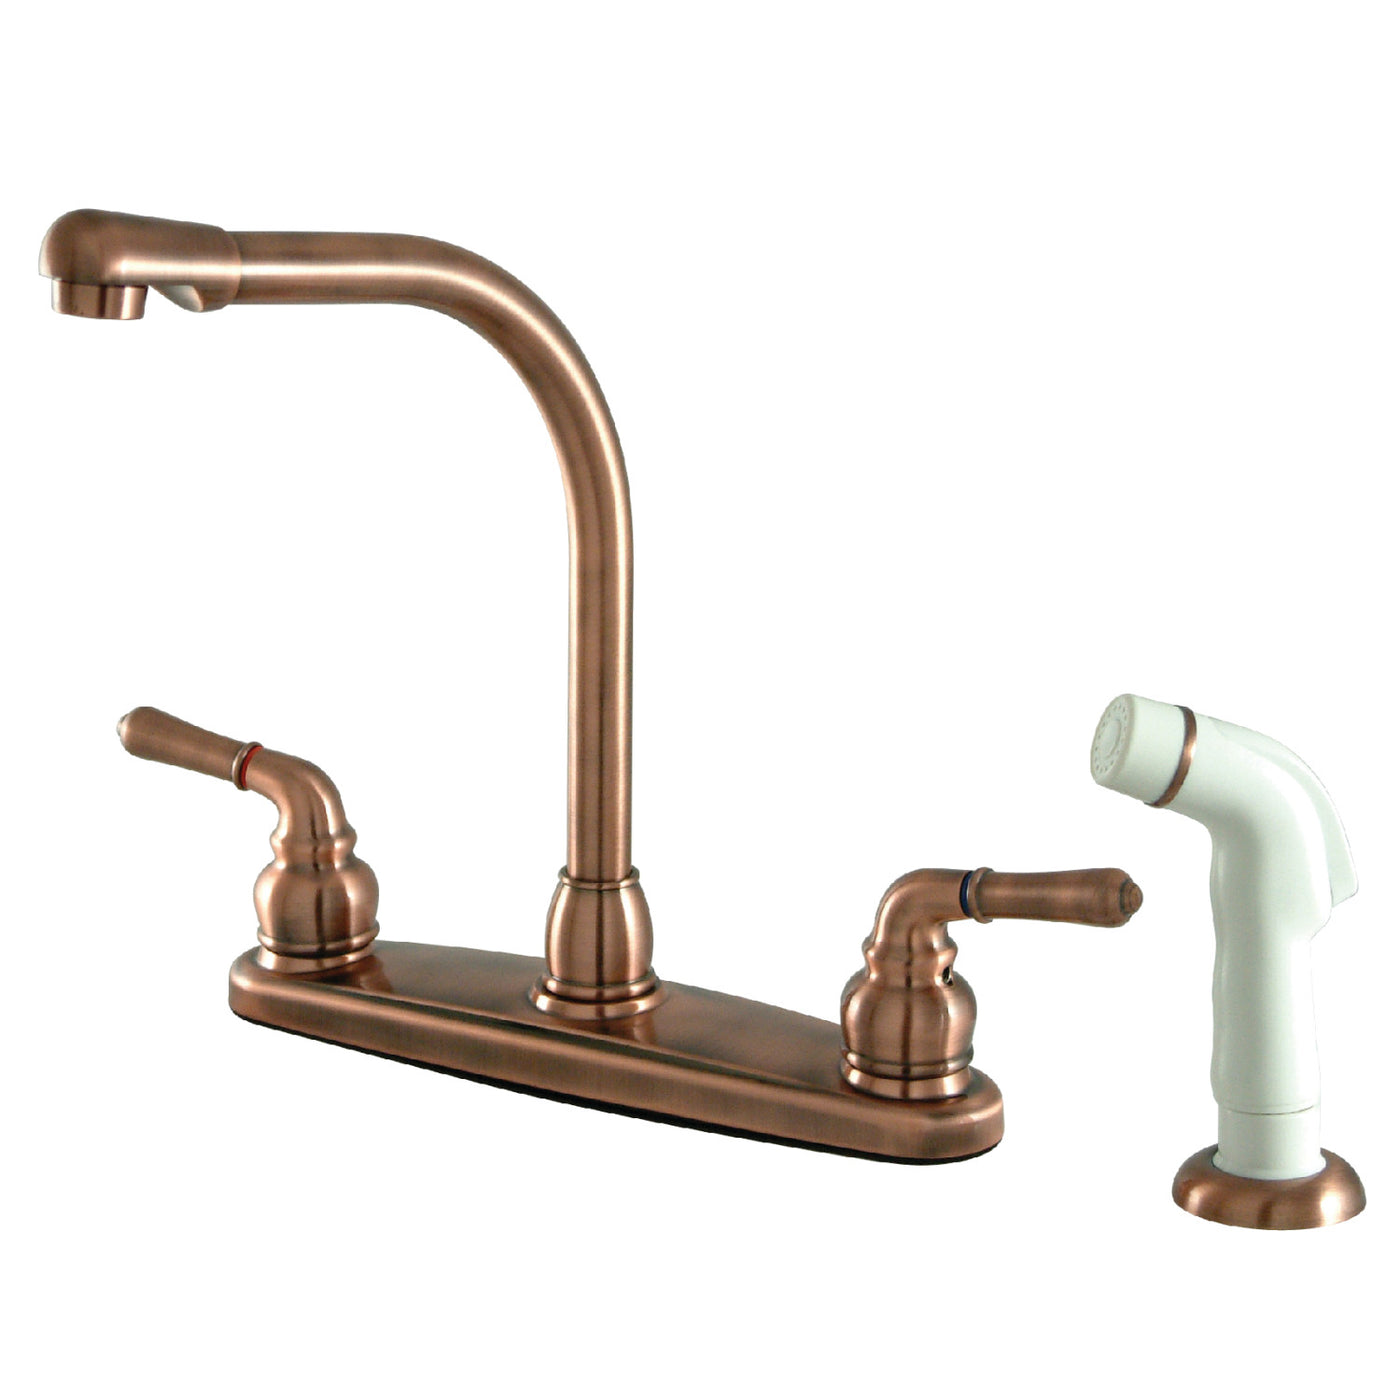 Elements of Design EB756 8-Inch Centerset Kitchen Faucet, Antique Copper